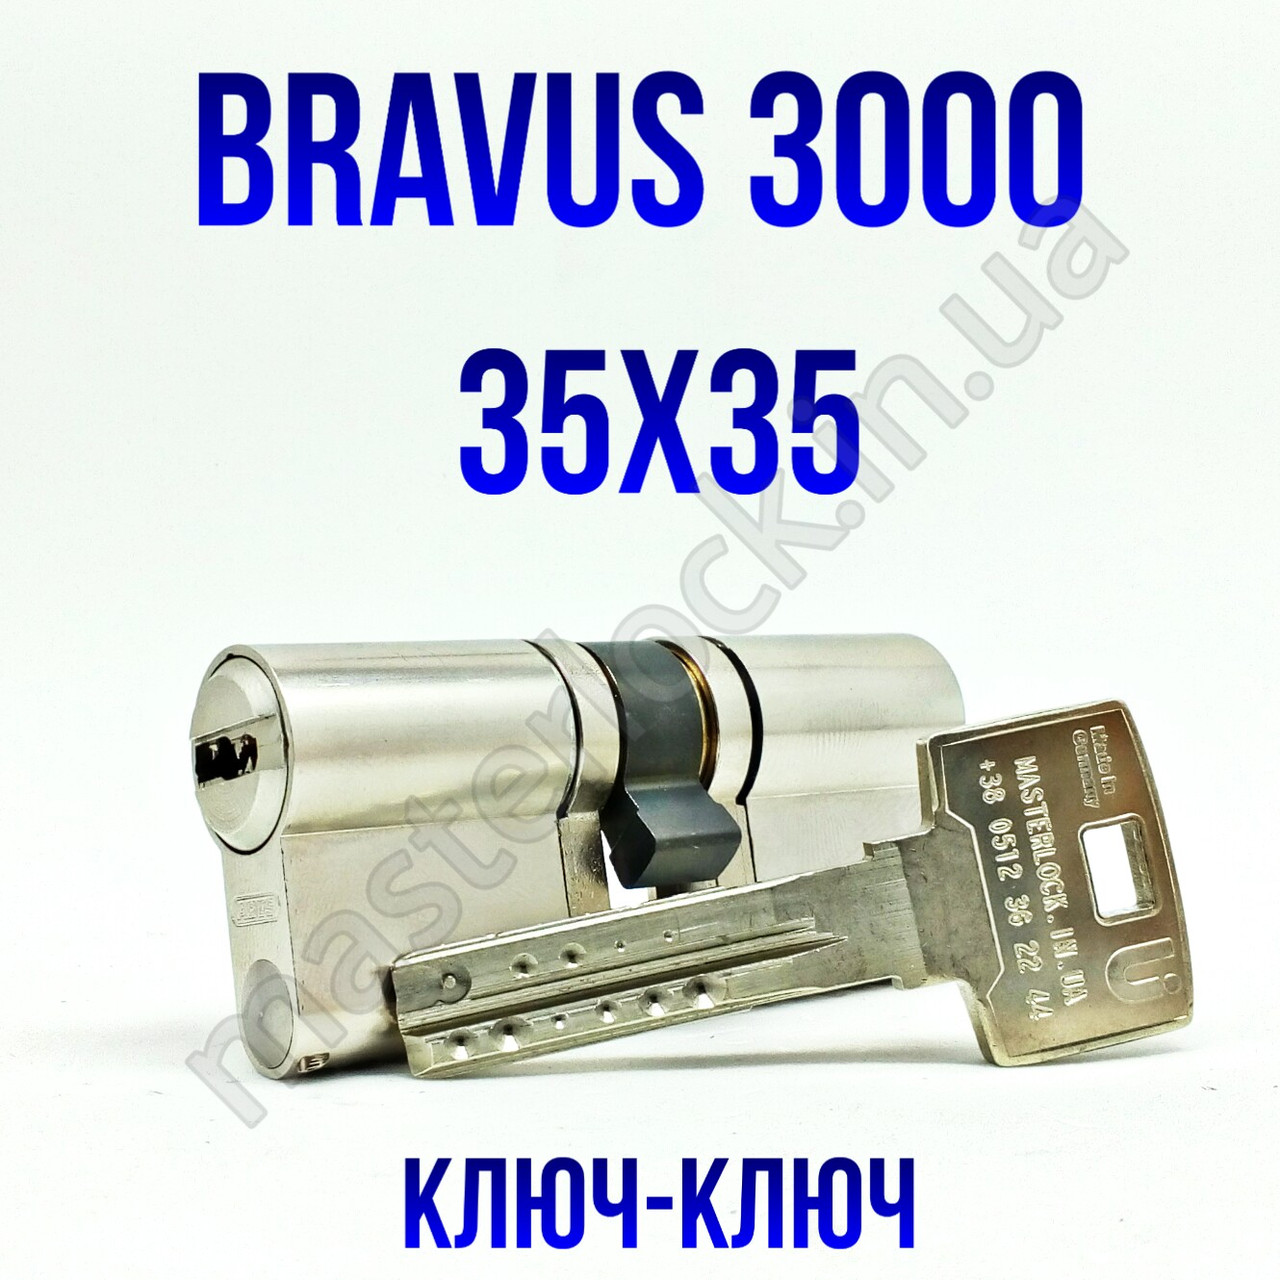 Циліндр Abus Bravus 3000MX 70 (35x35) ключ-ключ